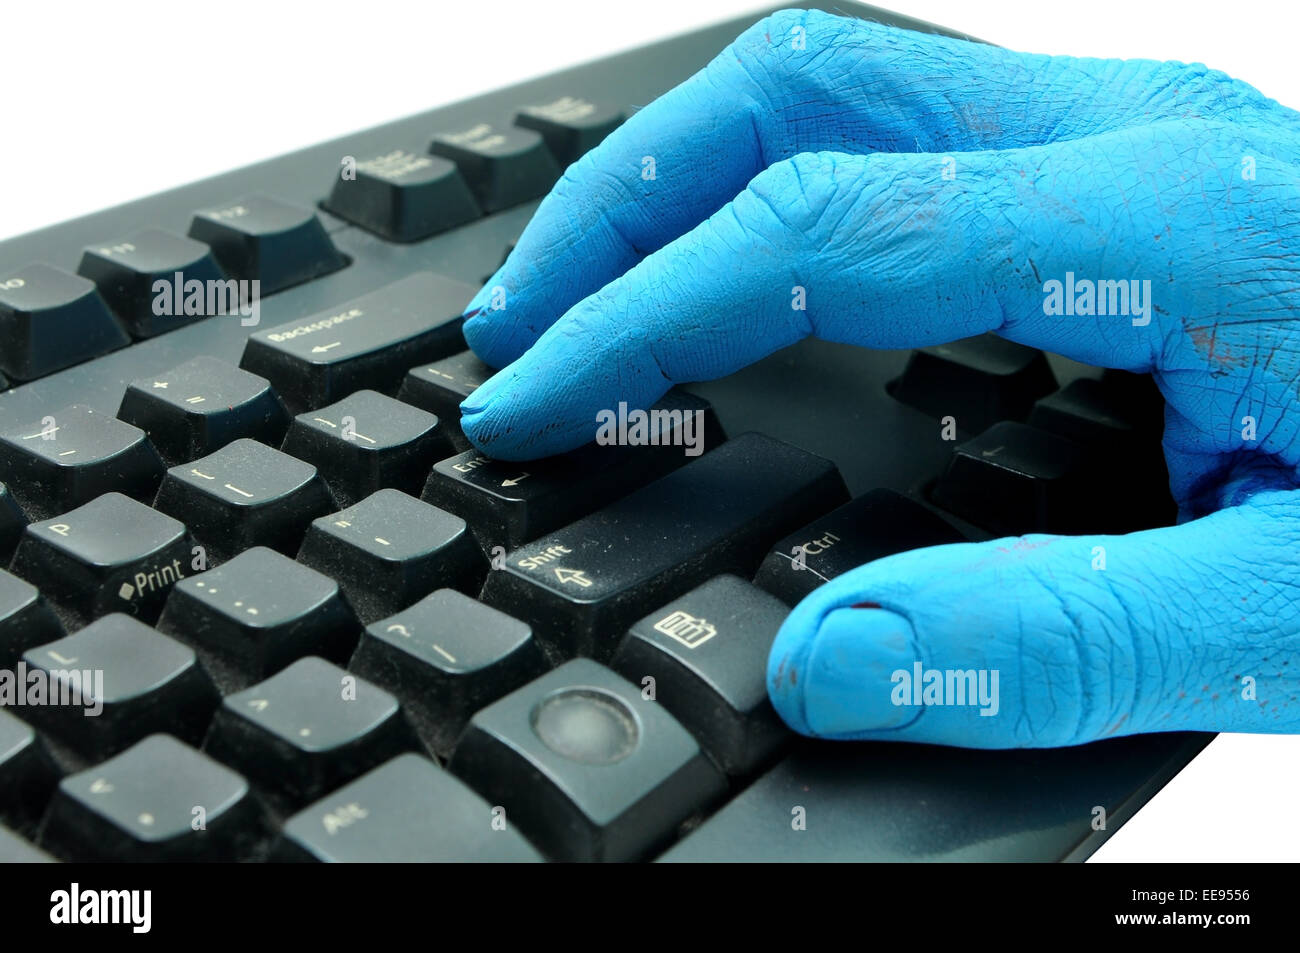 L'homme peint en bleu à l'aide d'un clavier sur fond blanc Banque D'Images